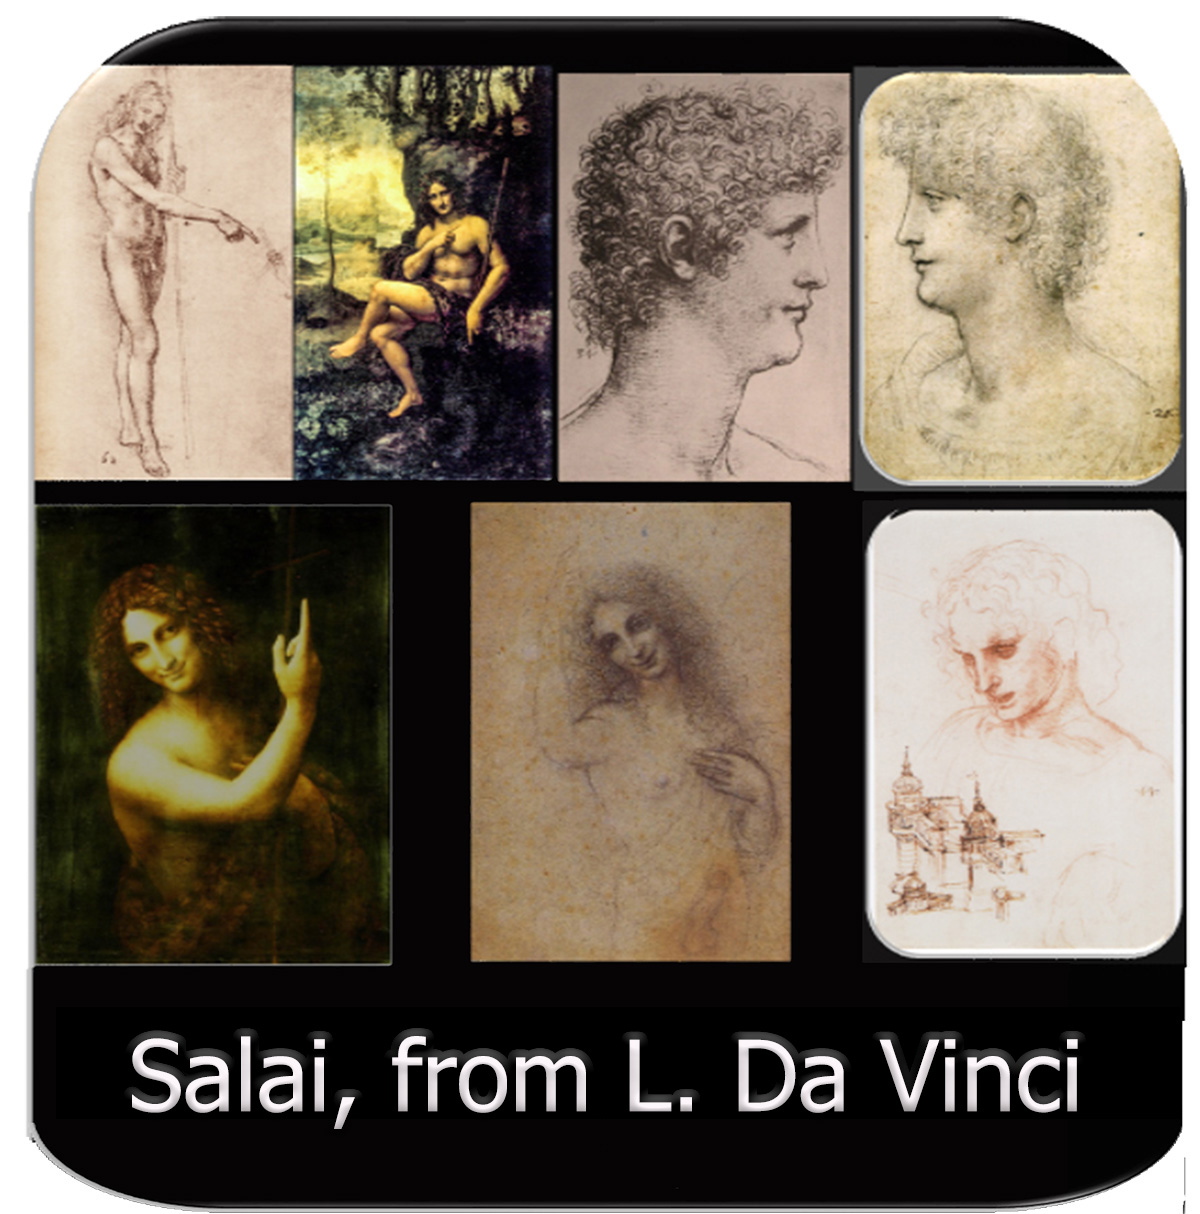 Salai drawings from Da Vinci